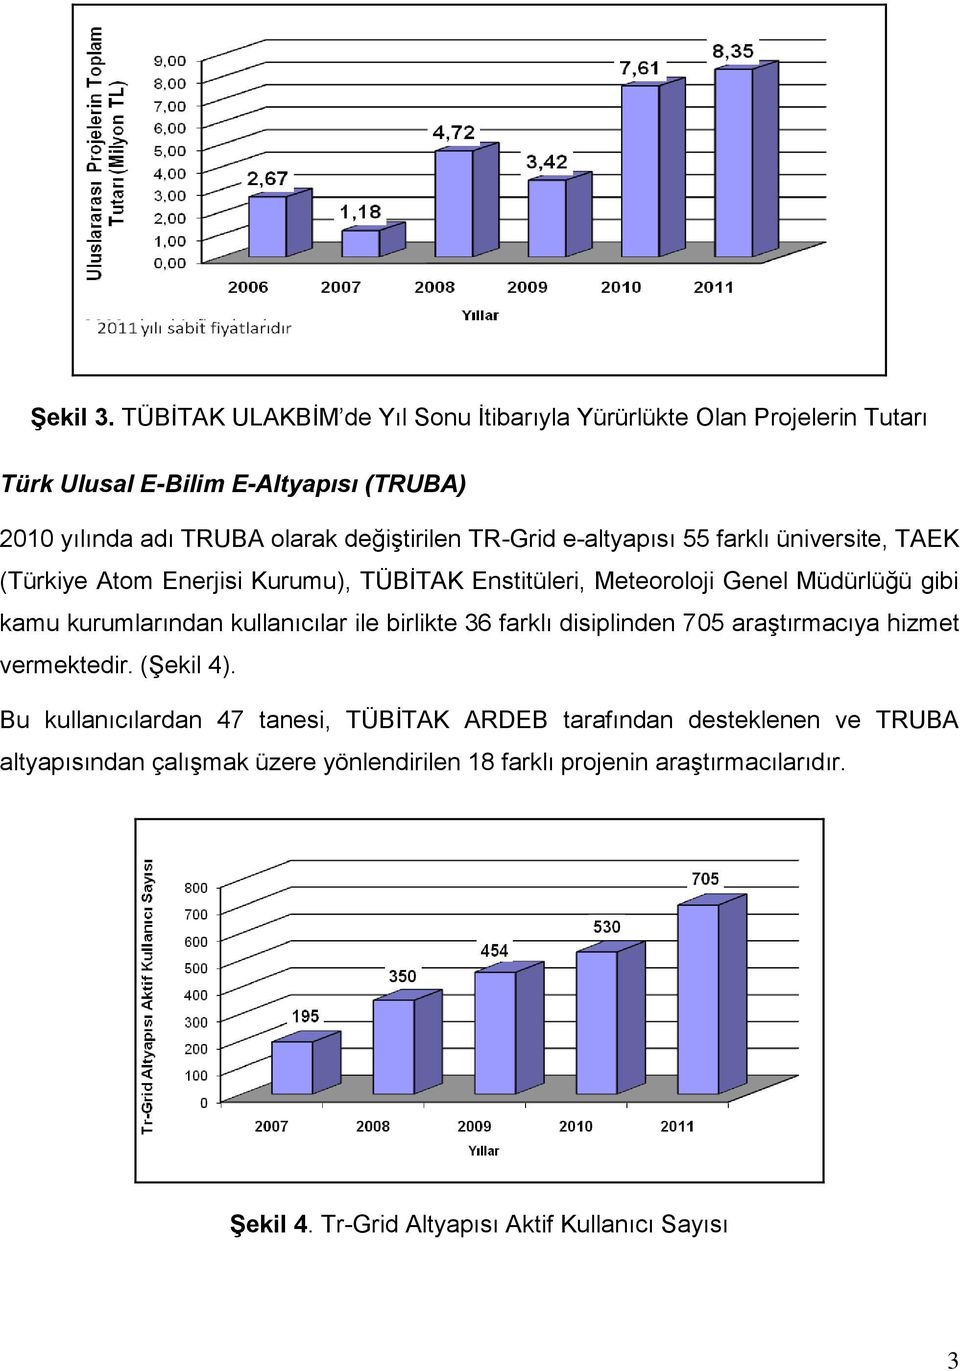 TR-Grid e-altyapısı 55 farklı üniversite, TAEK (Türkiye Atom Enerjisi Kurumu), TÜBİTAK Enstitüleri, Meteoroloji Genel Müdürlüğü gibi kamu kurumlarından